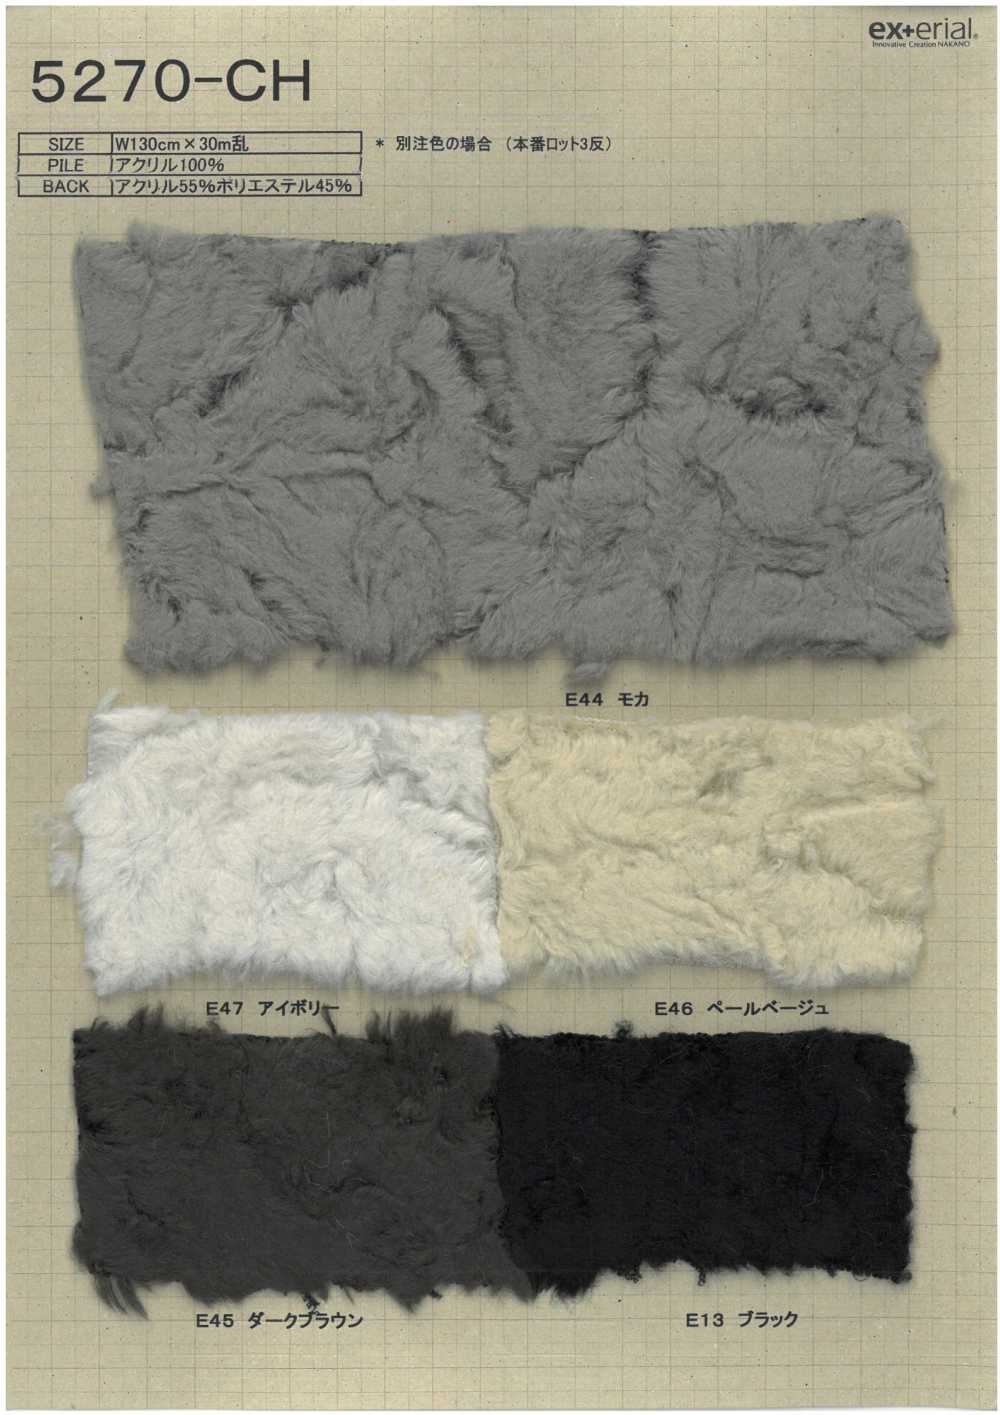 5270-CH Fourrure Artisanale [Coton Vintage][Fabrication De Textile] Industrie Du Jersey Nakano